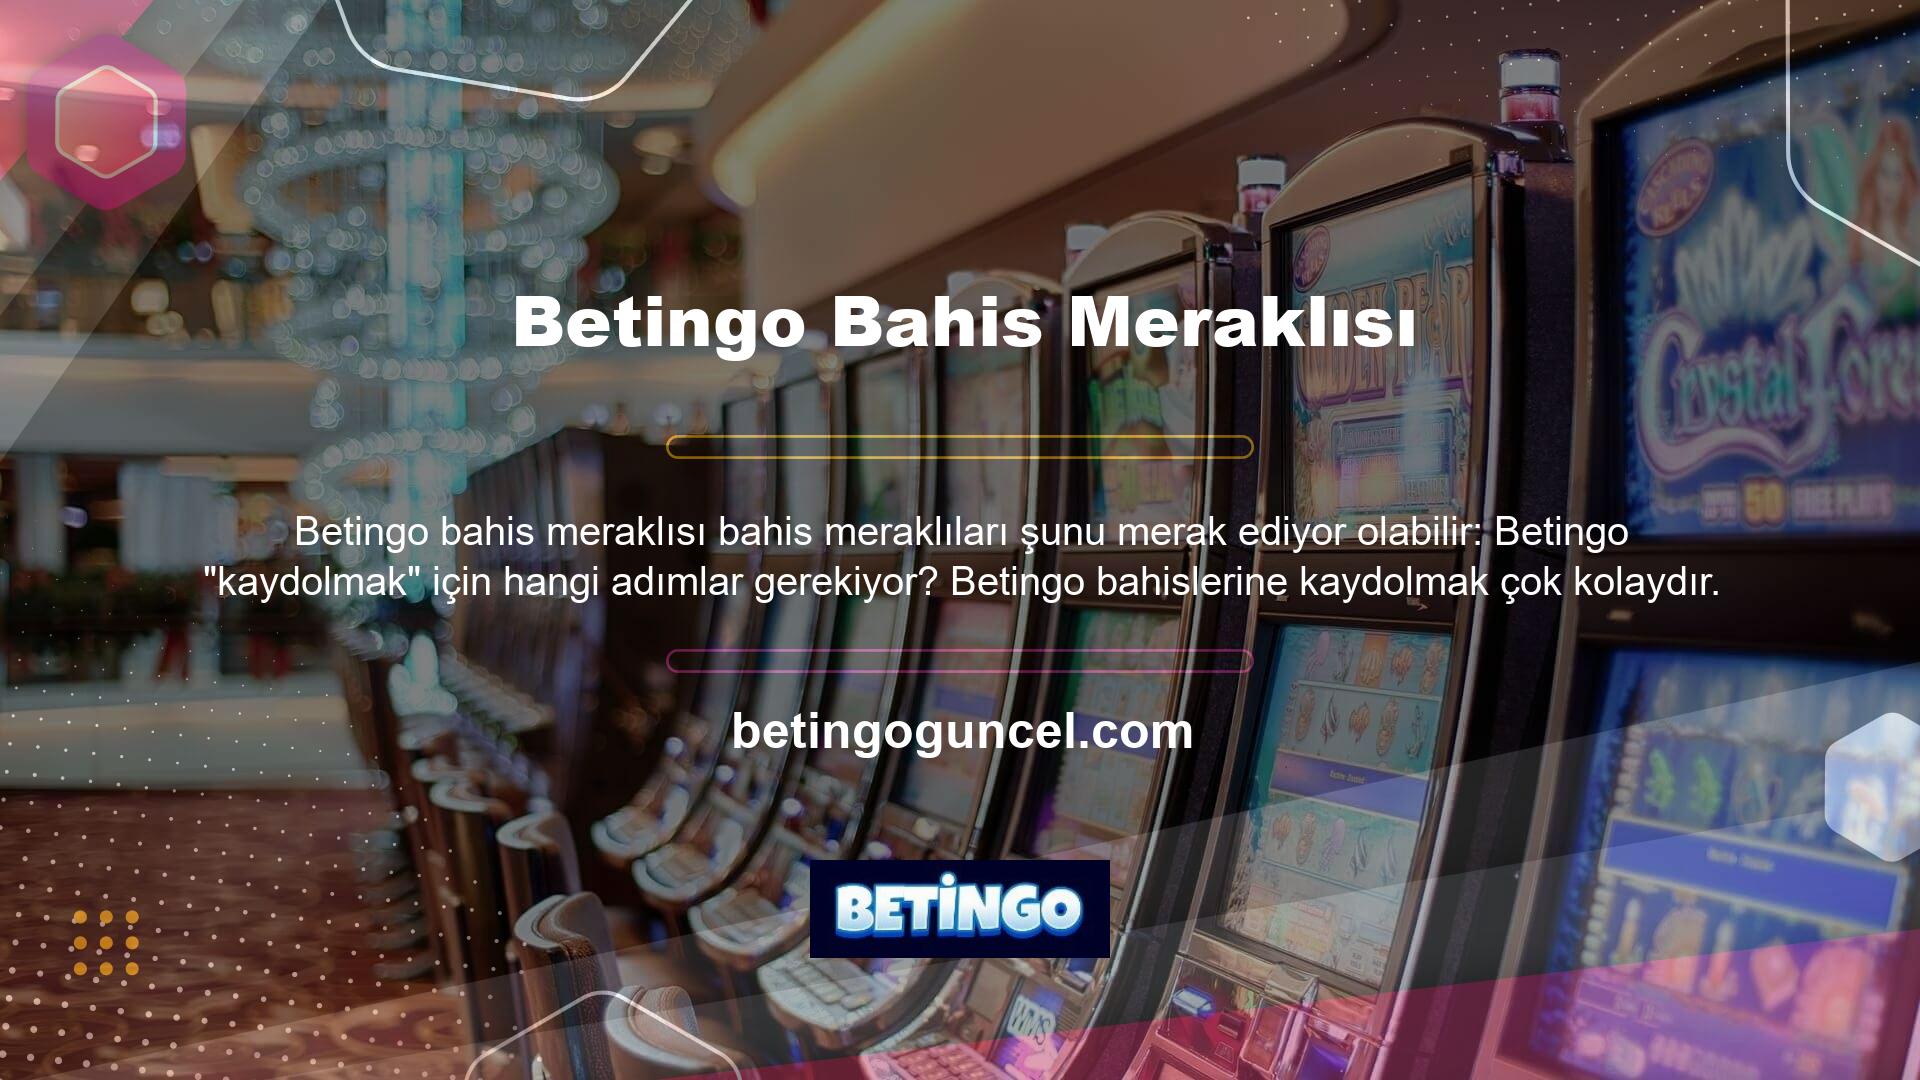 Betingo BTK, Türkiye'de yürürlükte olan mevzuat uyarınca Betingo giriş adresi casino sektörüne ait olan web sitelerini bloke etmektedir